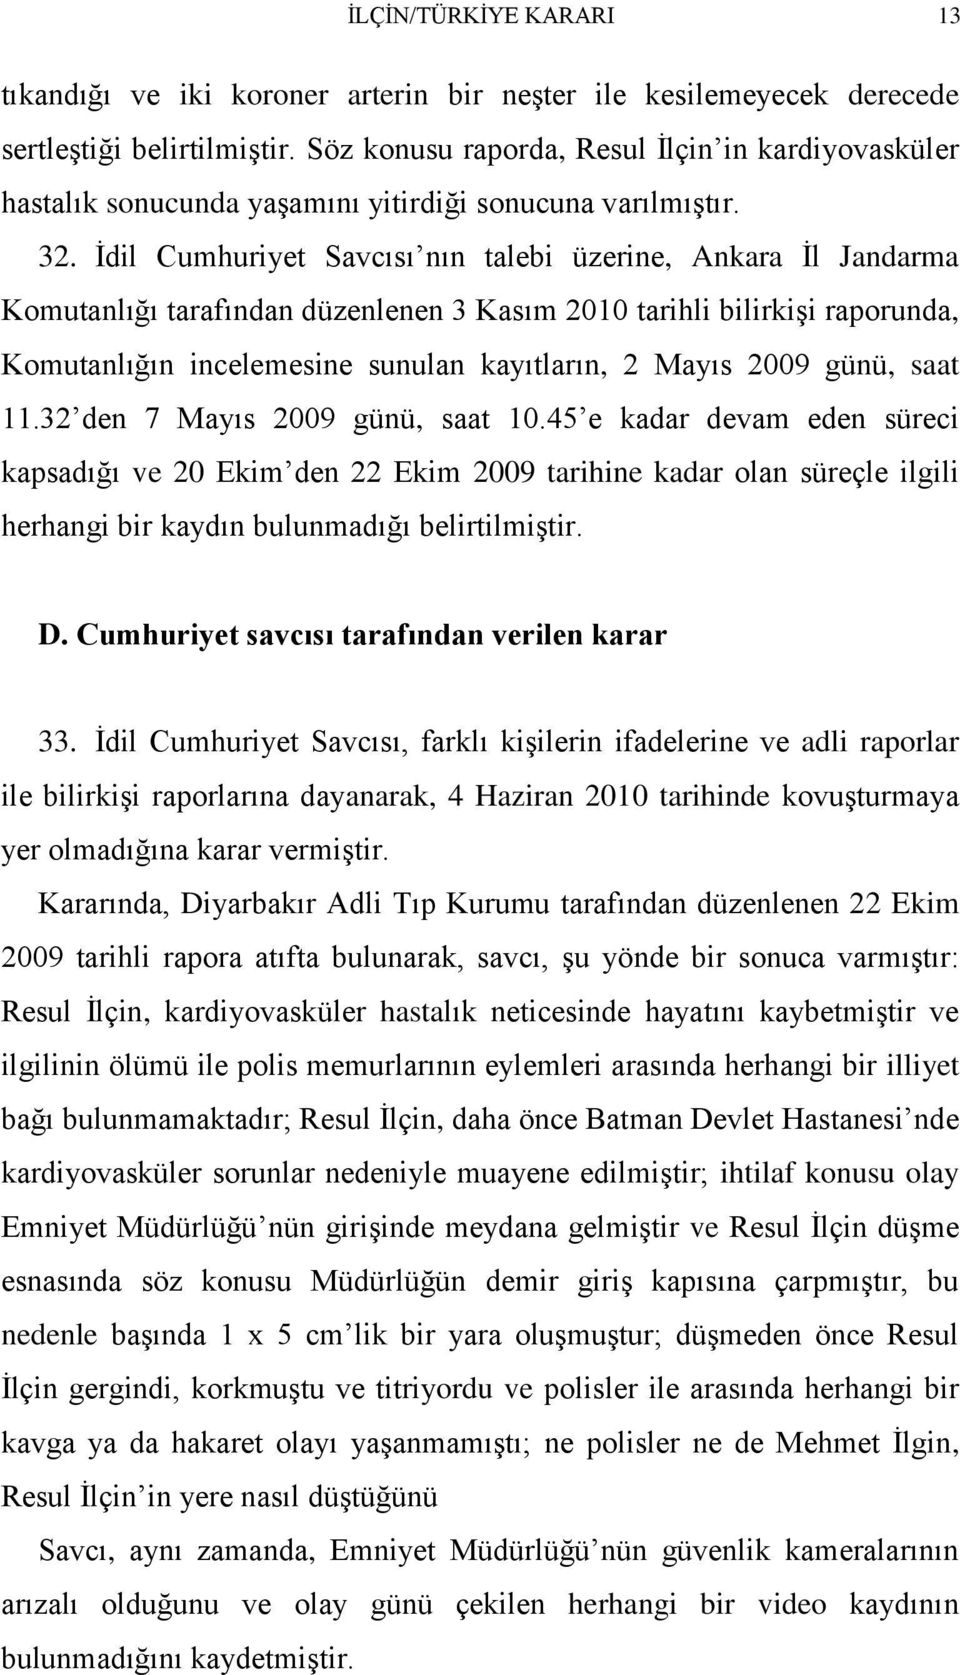 İdil Cumhuriyet Savcısı nın talebi üzerine, Ankara İl Jandarma Komutanlığı tarafından düzenlenen 3 Kasım 2010 tarihli bilirkişi raporunda, Komutanlığın incelemesine sunulan kayıtların, 2 Mayıs 2009